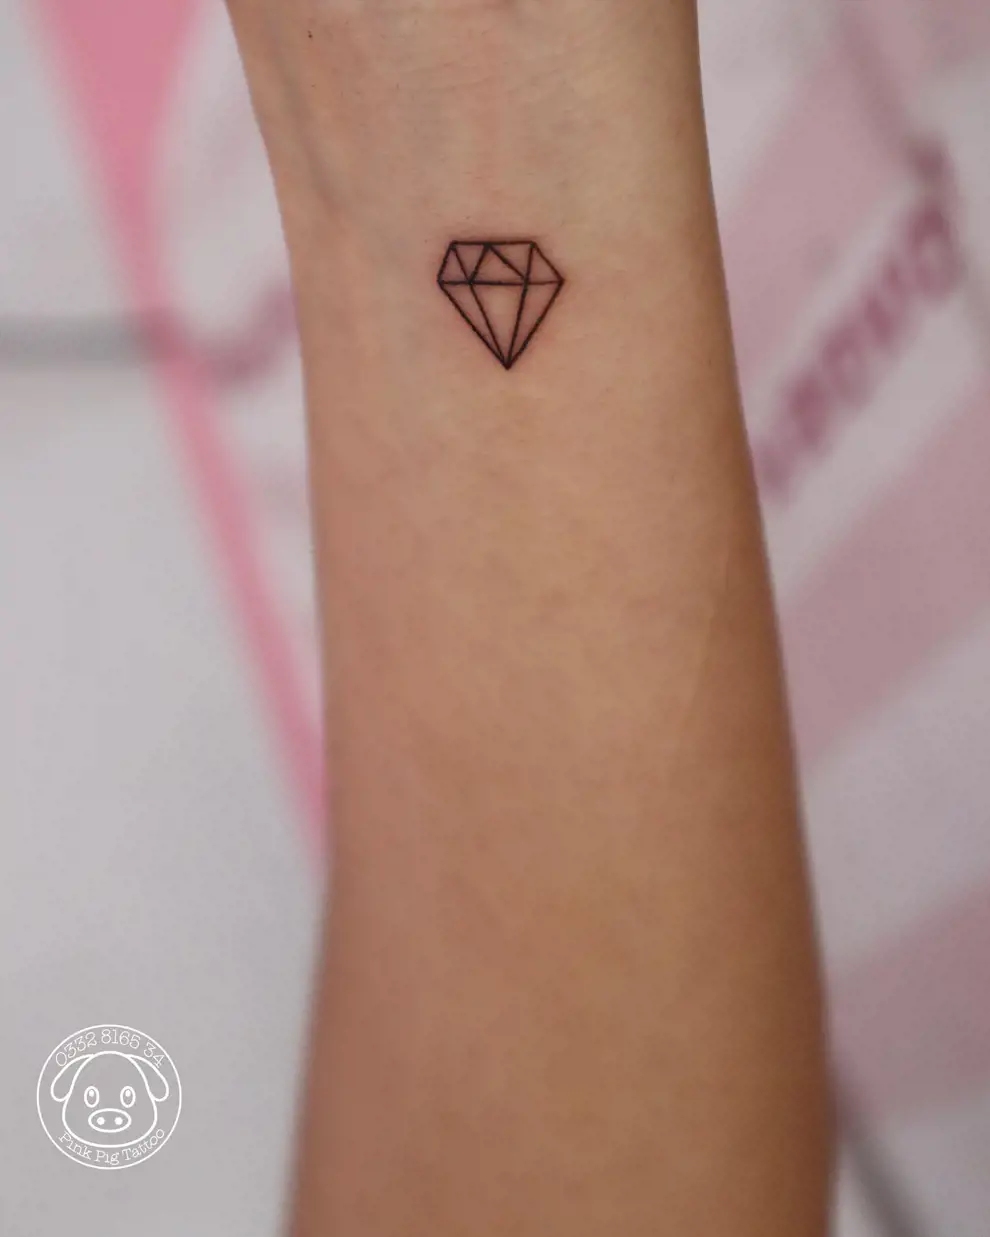 Tatuajes con significado: diamante